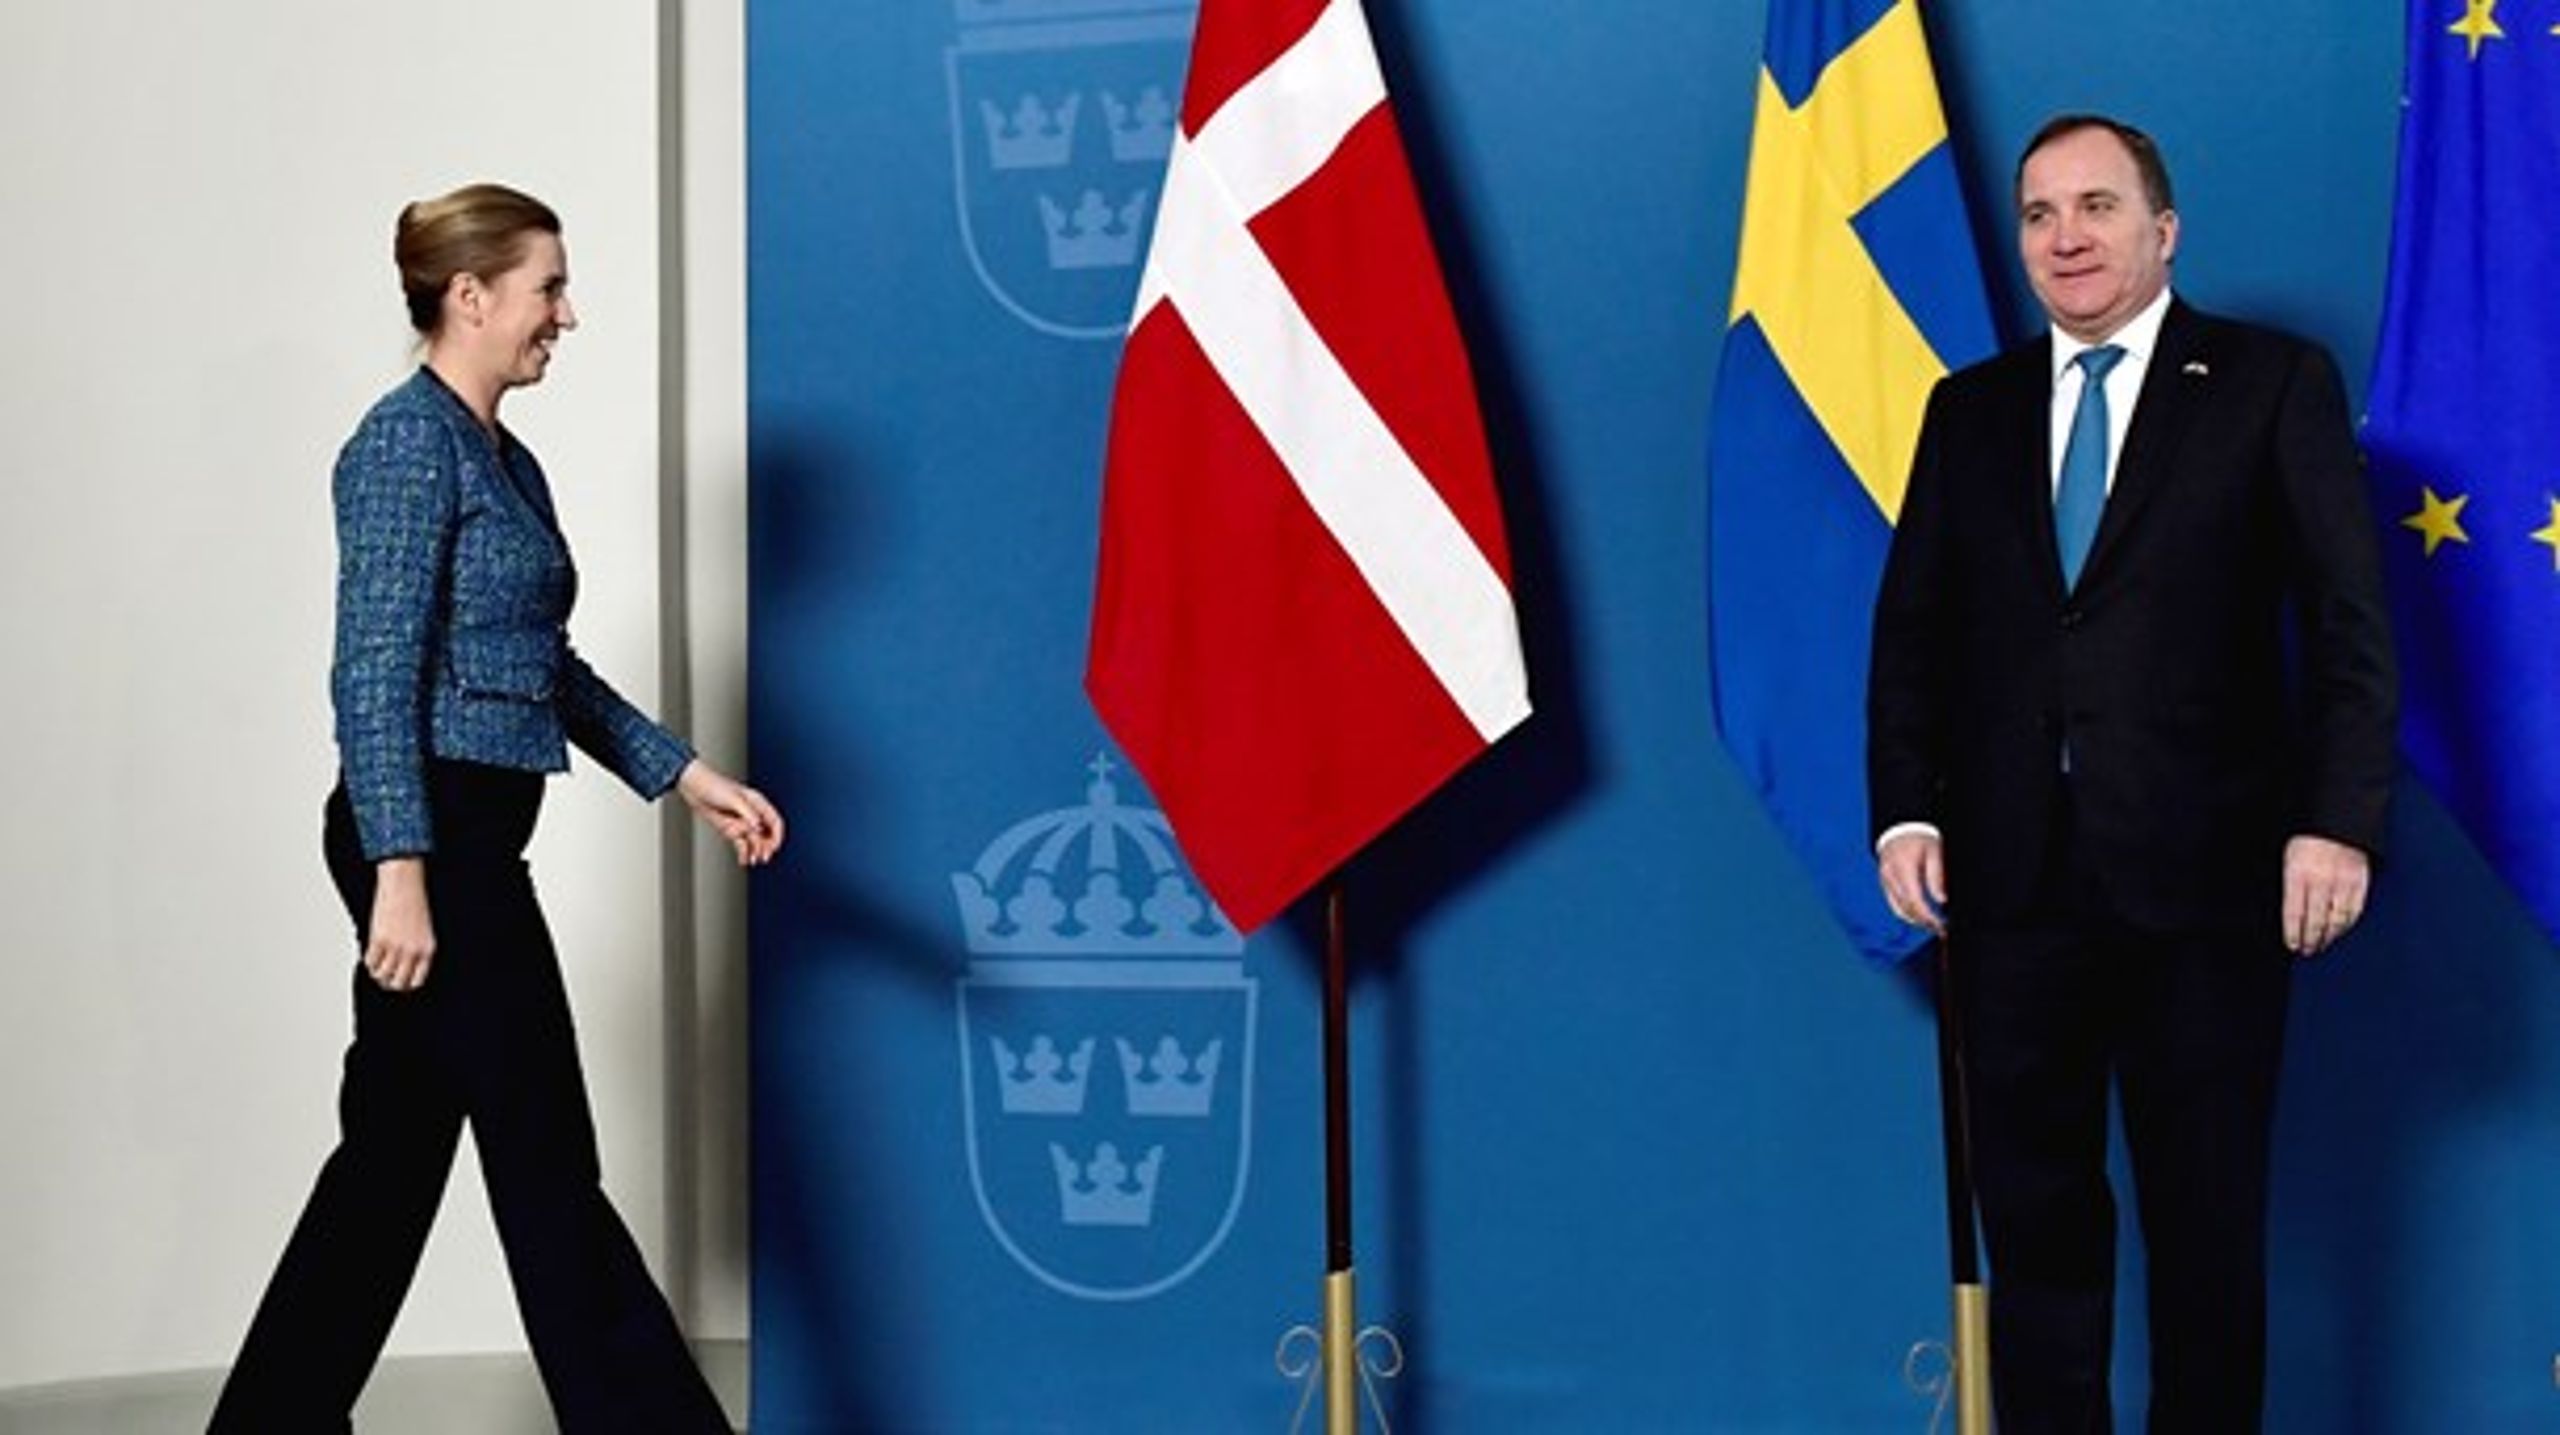 "Både den danske og svenske statsminister forsøger at vinde vores tillid, men de spiller deres rolle på vidt forskellige måder," skriver Lone Holm Pedersen og Kitte Wagner.&nbsp;